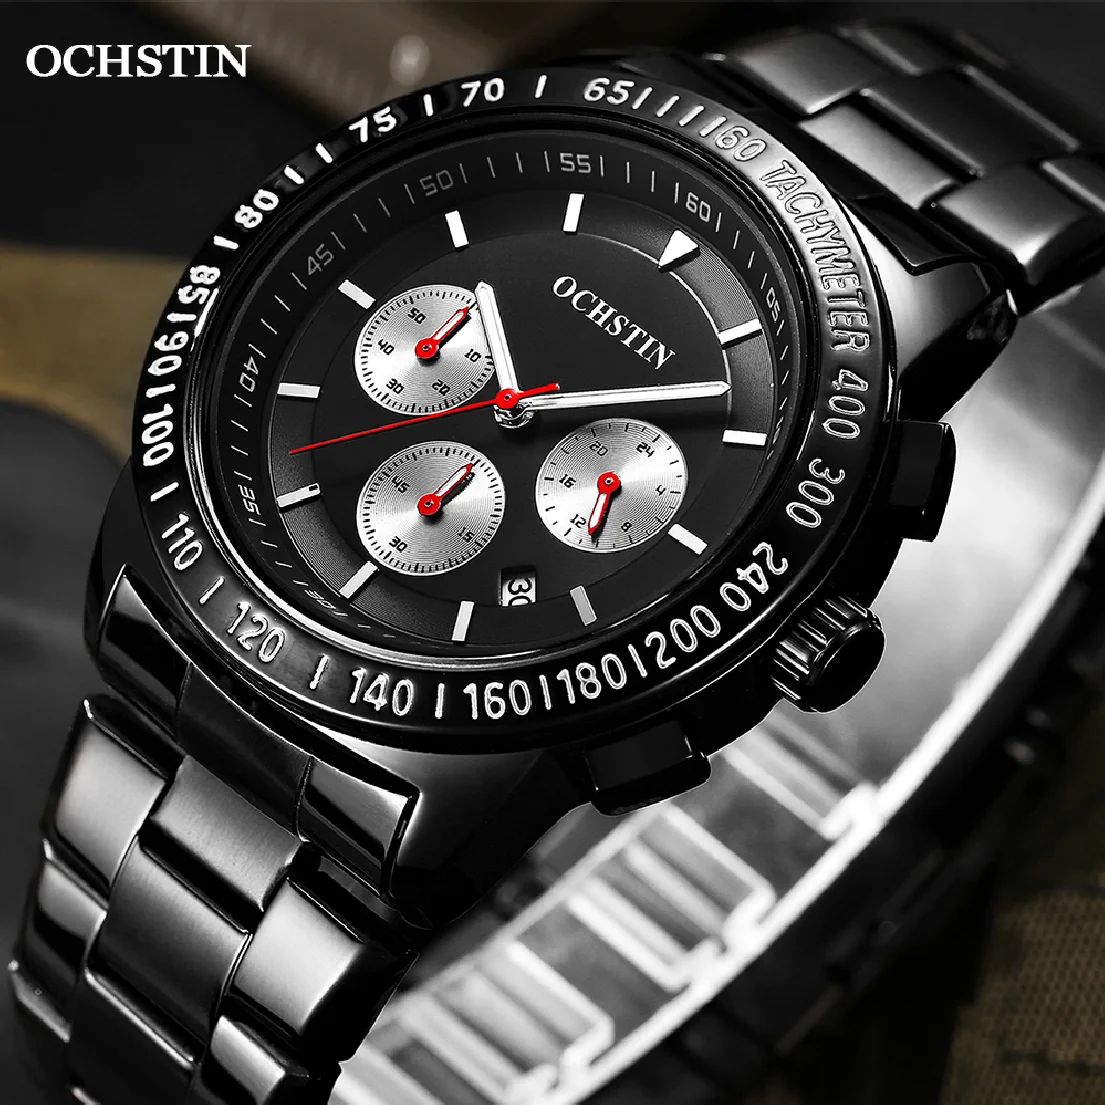 

OCSHTIN современные мужские часы 2021 пилот кварцевый хронограф наручные часы повседневные Роскошные Дата дисплей часы Подарки для мужчин GQ6108